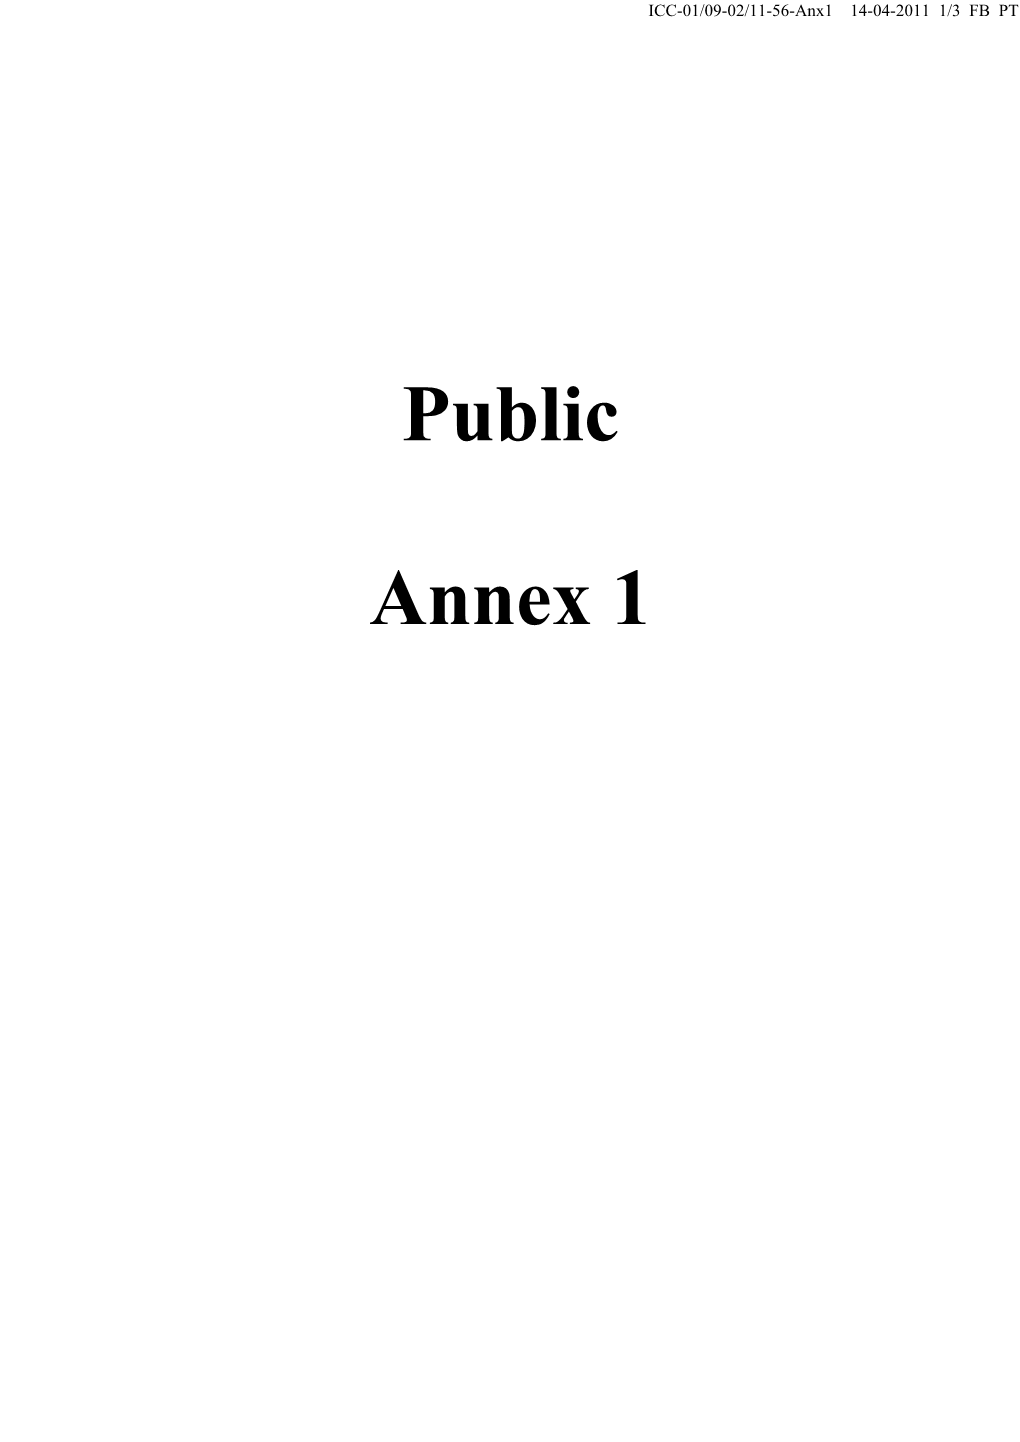 Public Annex 1